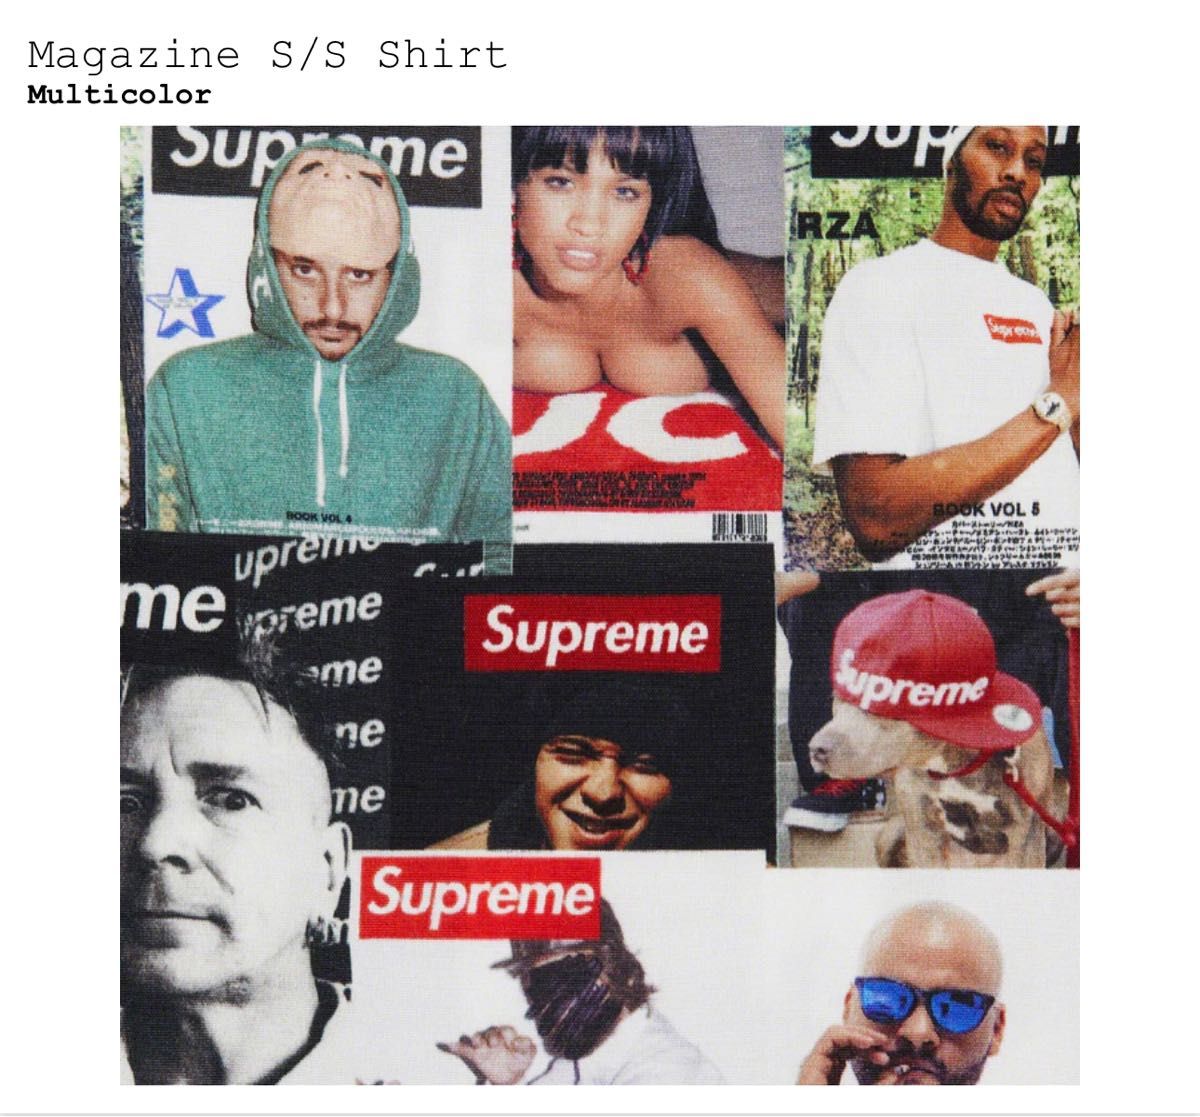 Supreme Magazine S/S Shirt 